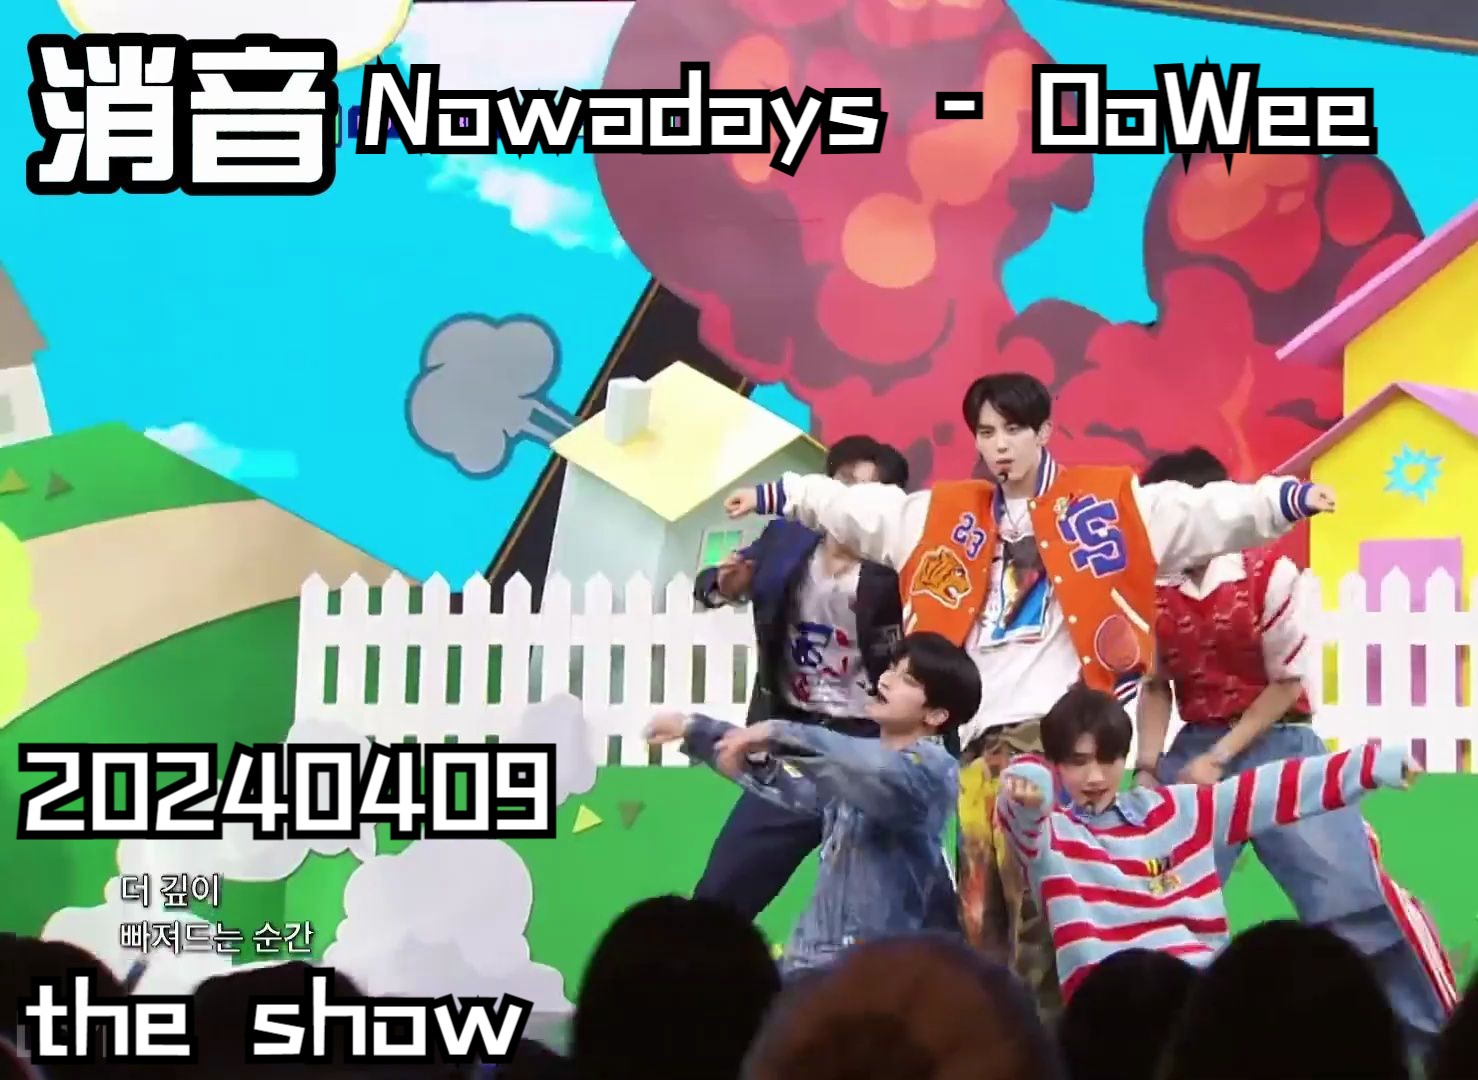 【消音】Nowadays - OoWee 20240409 the show